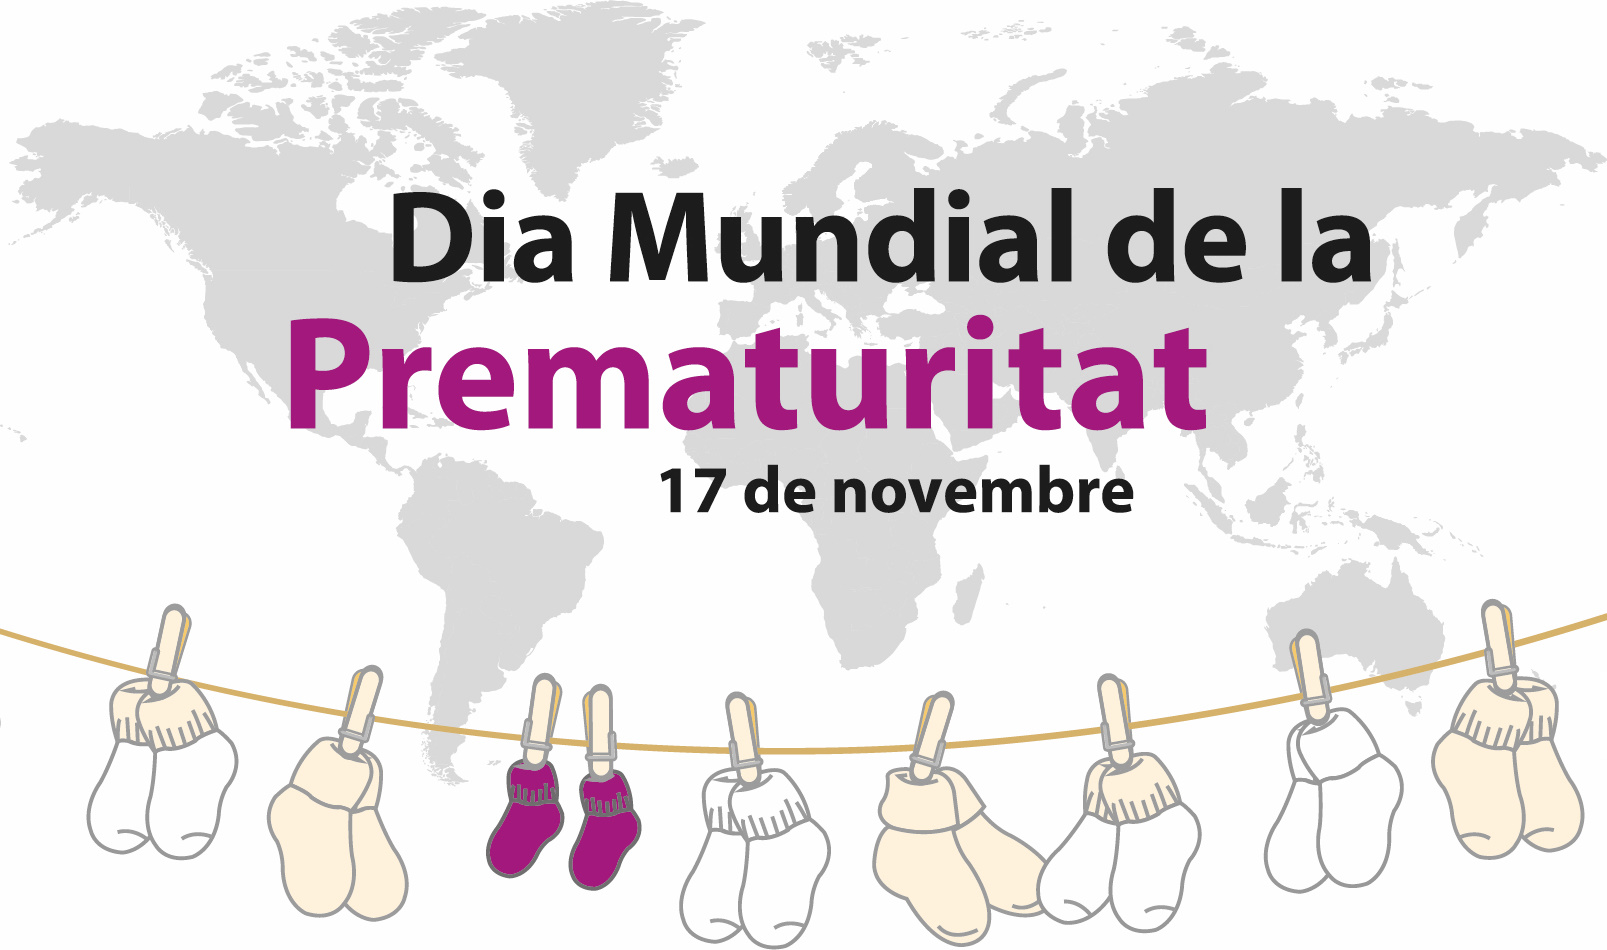 17 de novembre, Dia Mundial de la Prematuritat